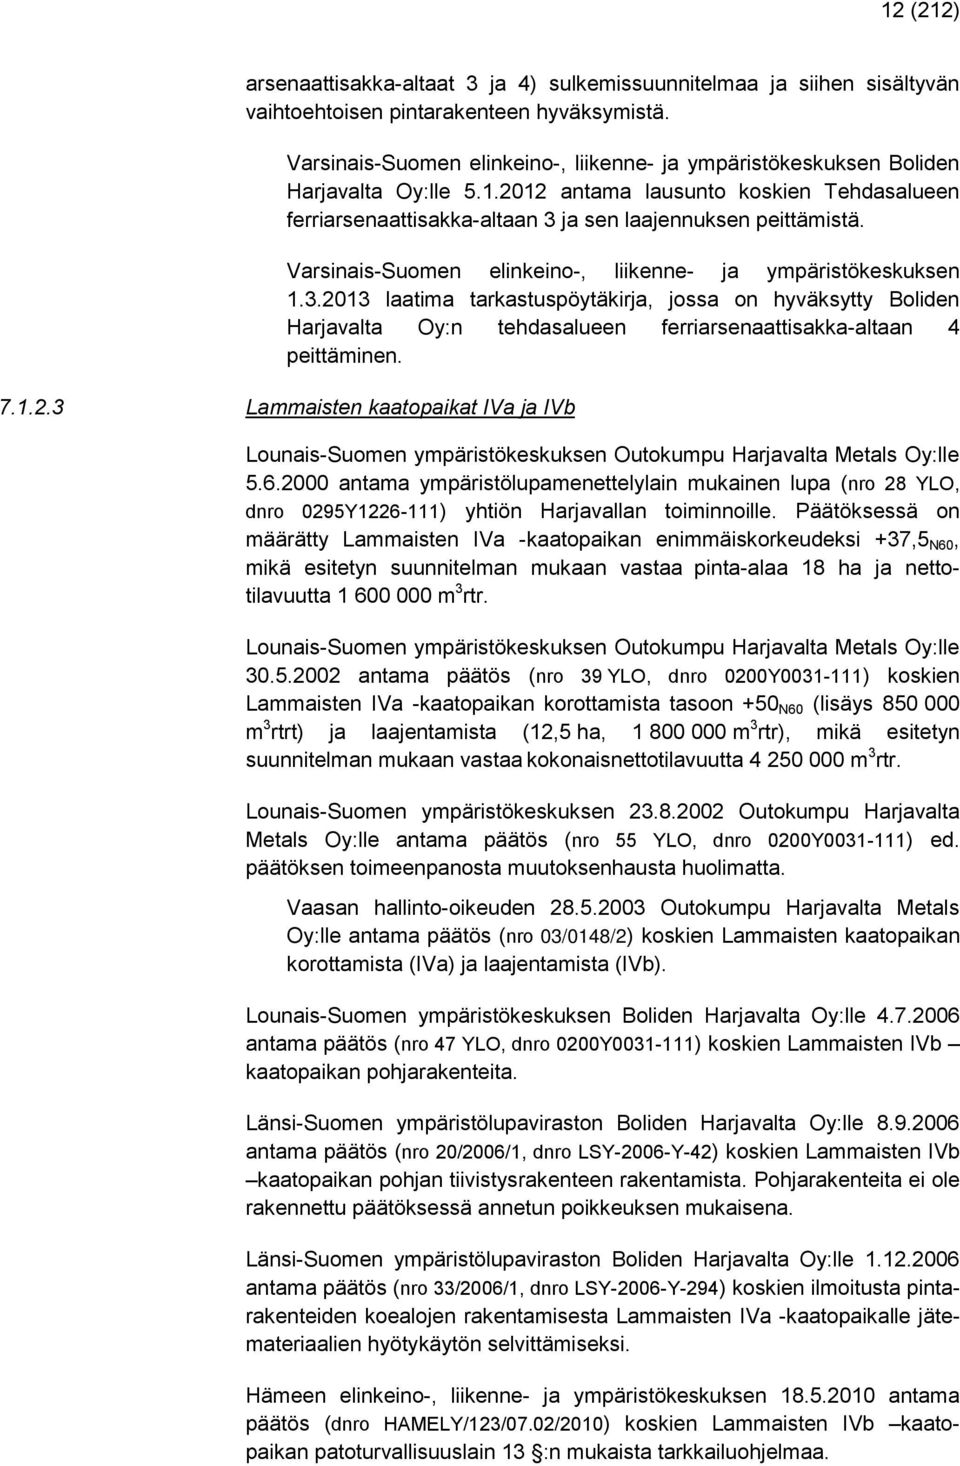 Varsinais-Suomen elinkeino-, liikenne- ja ympäristökeskuksen 1.3.2013 laatima tarkastuspöytäkirja, jossa on hyväksytty Boliden Harjavalta Oy:n tehdasalueen ferriarsenaattisakka-altaan 4 peittäminen.